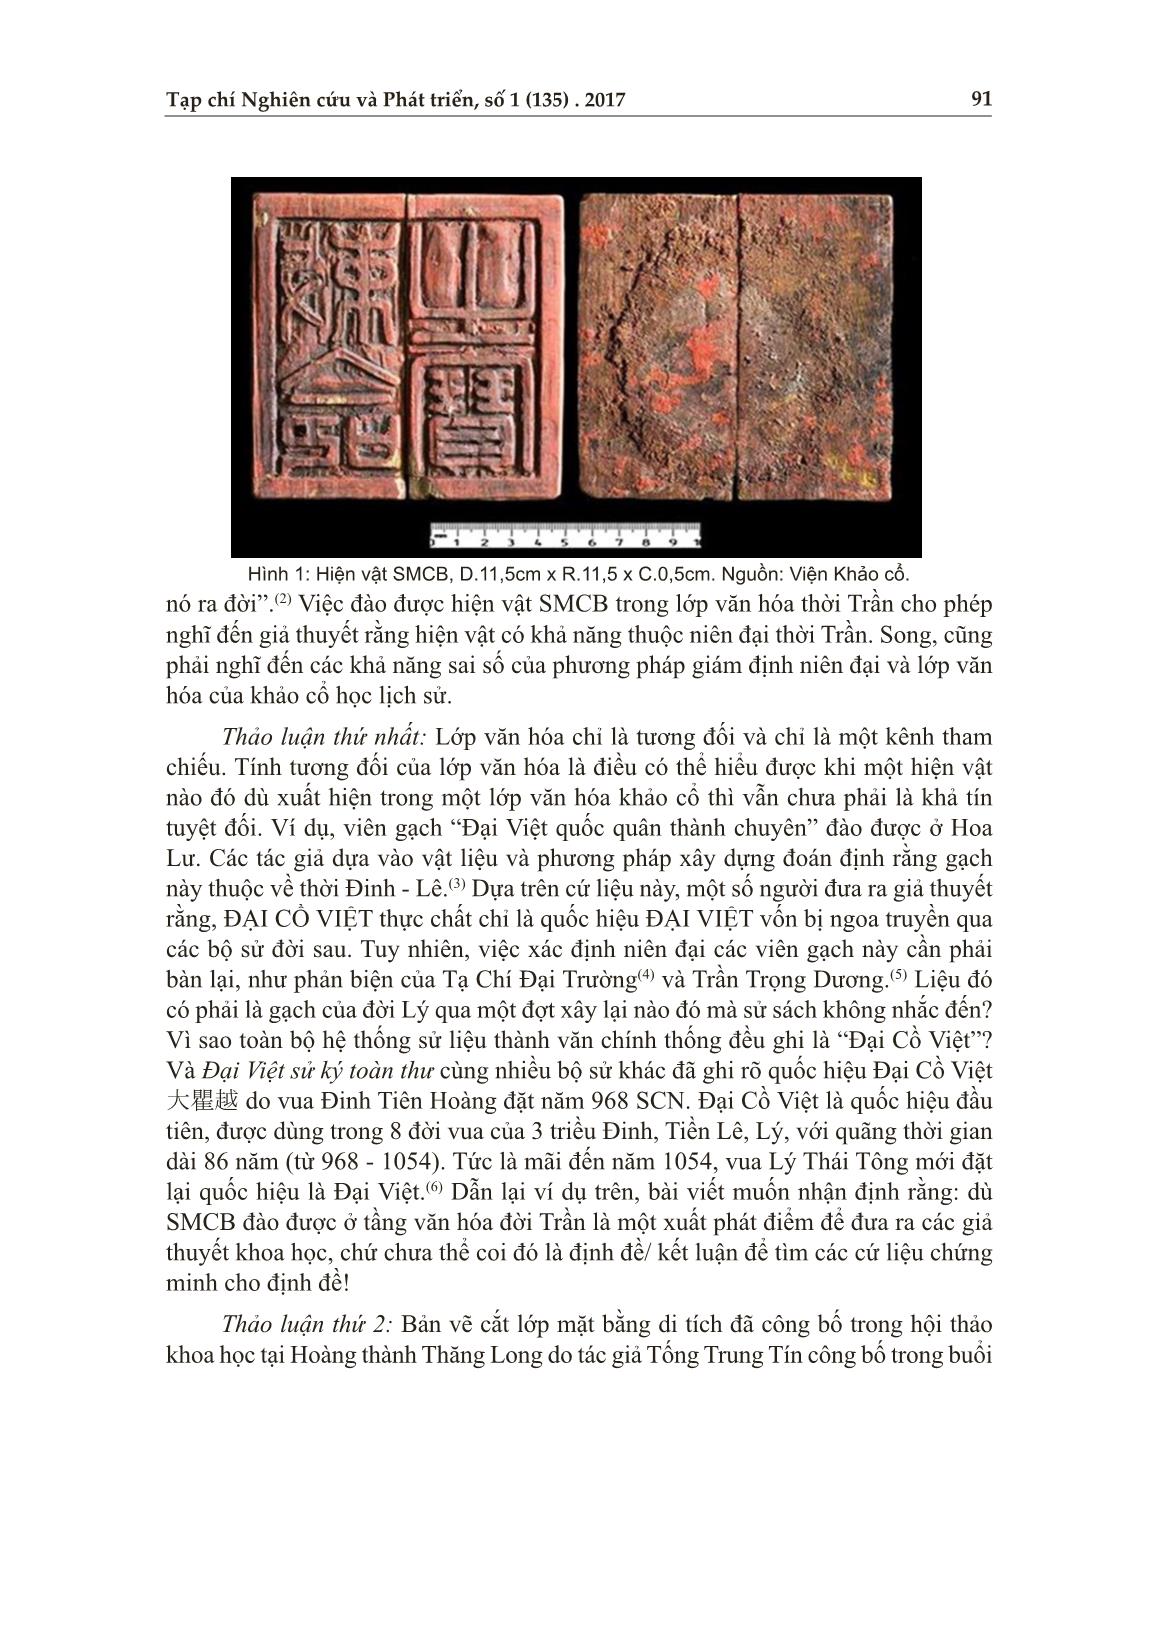 Nghiên cứu lịch sử, chức năng ấn “sắc mệnh chi bảo” (từ độ tụ của sử liệu) trang 2